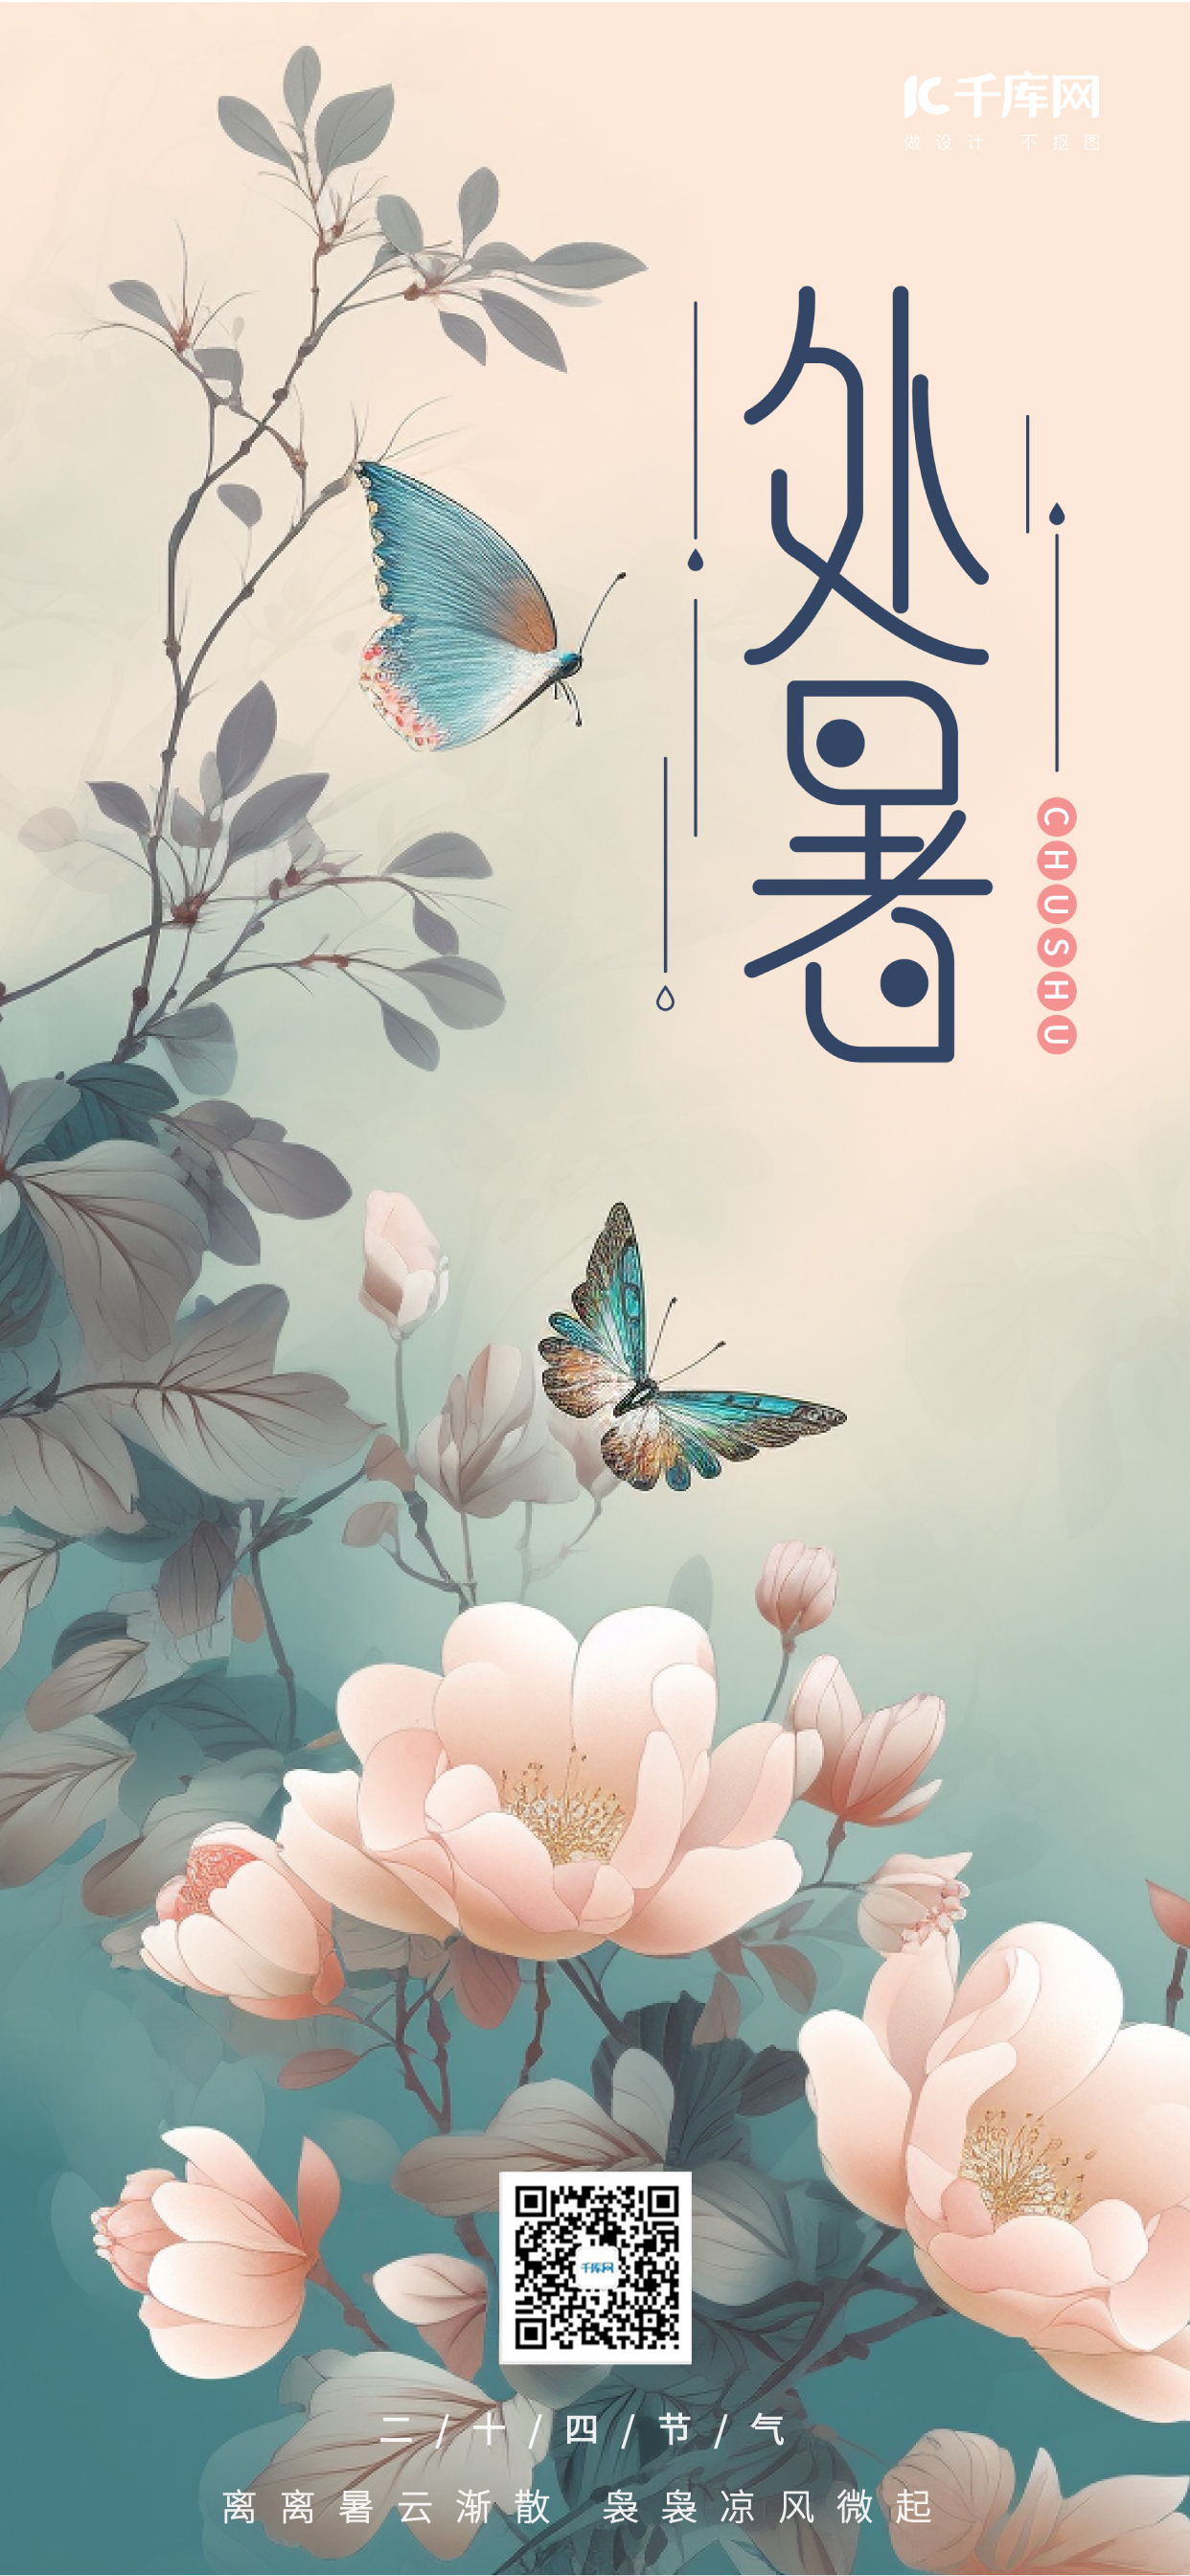 处暑节气花卉蝴蝶青绿手绘广告宣传海报图片